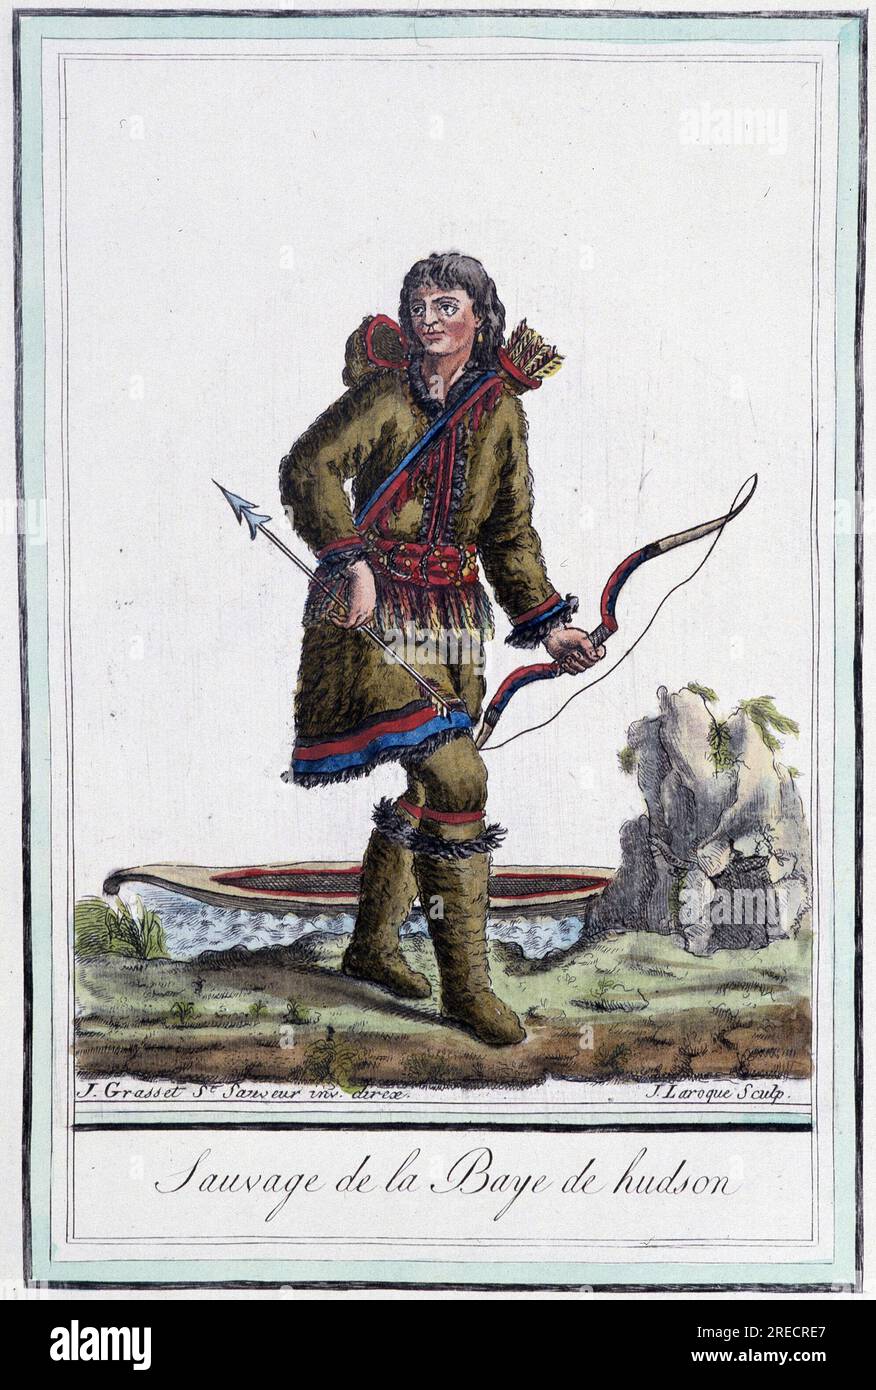 Sauvage de la baie d'Hudson (Kanada) – in 'Encyclopedie des voyages' par Grasset St Sauveur, Ausgabe 1796 Stockfoto